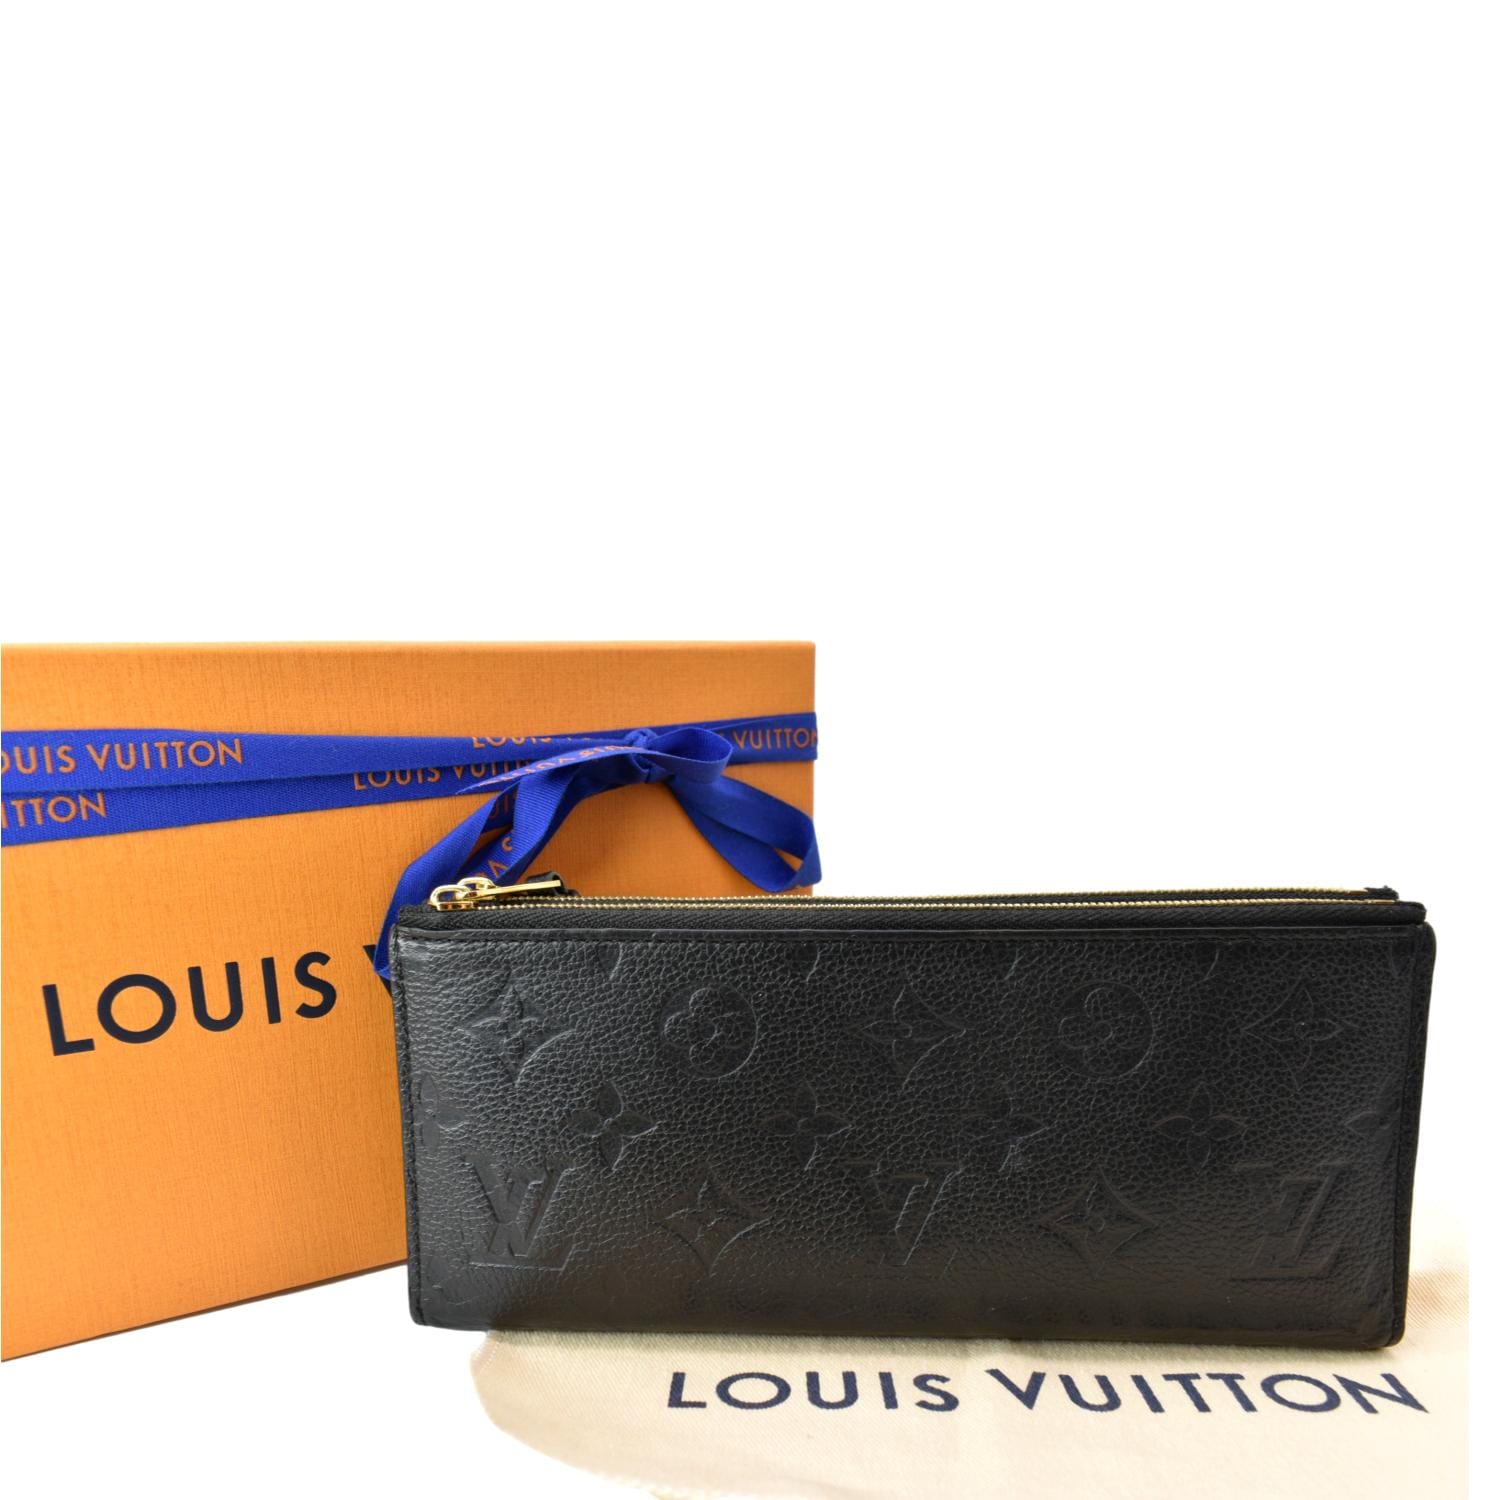 Divine Consign & Boutique - Authentic Louis Vuitton Adele Wallet